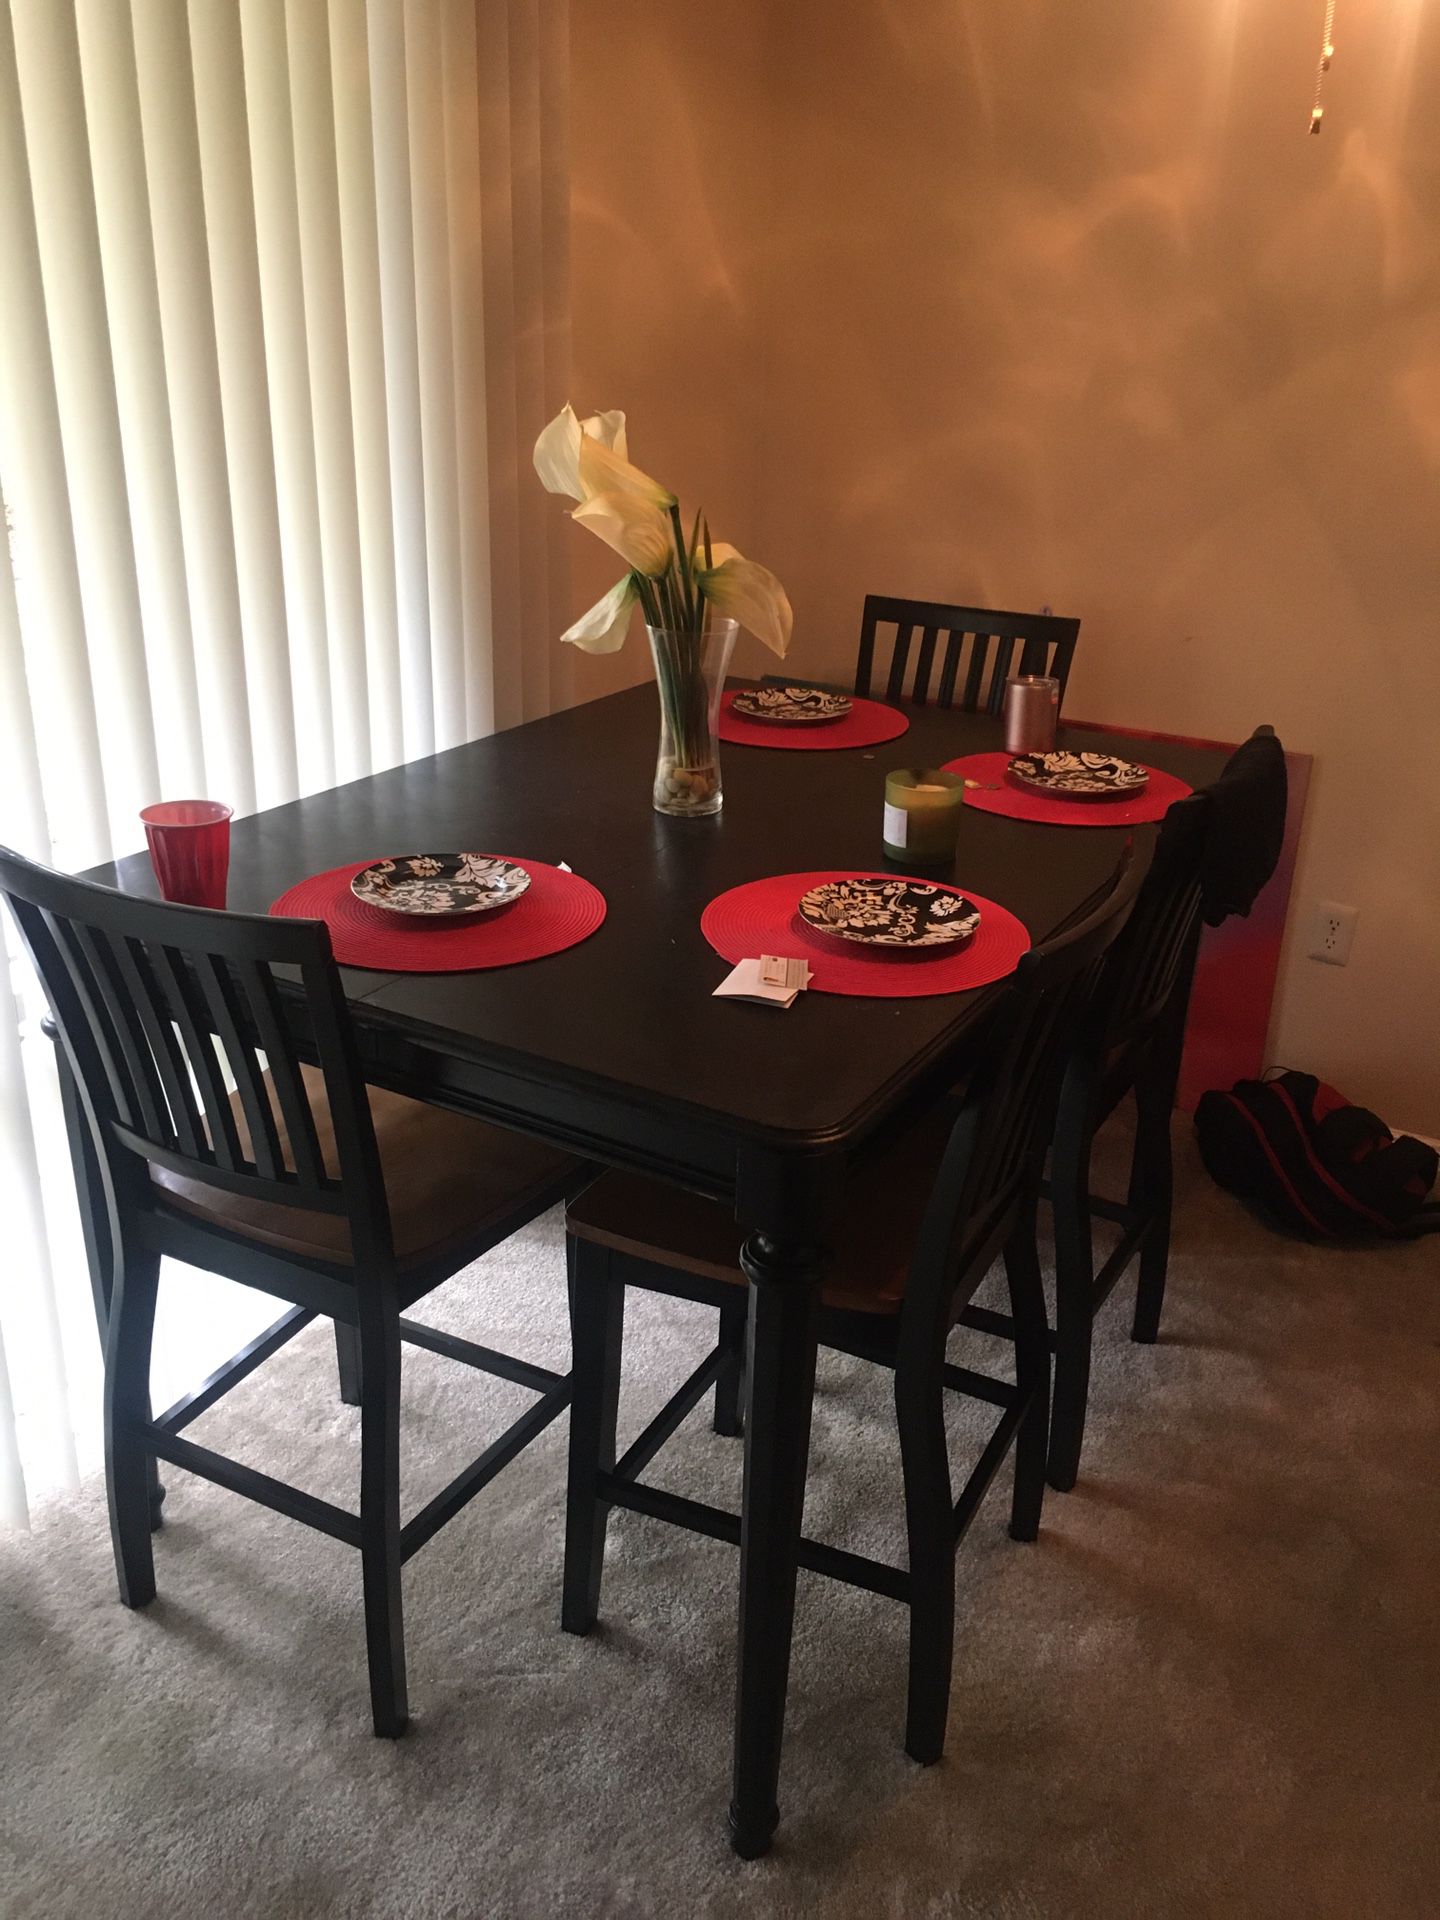 Dinning room table set